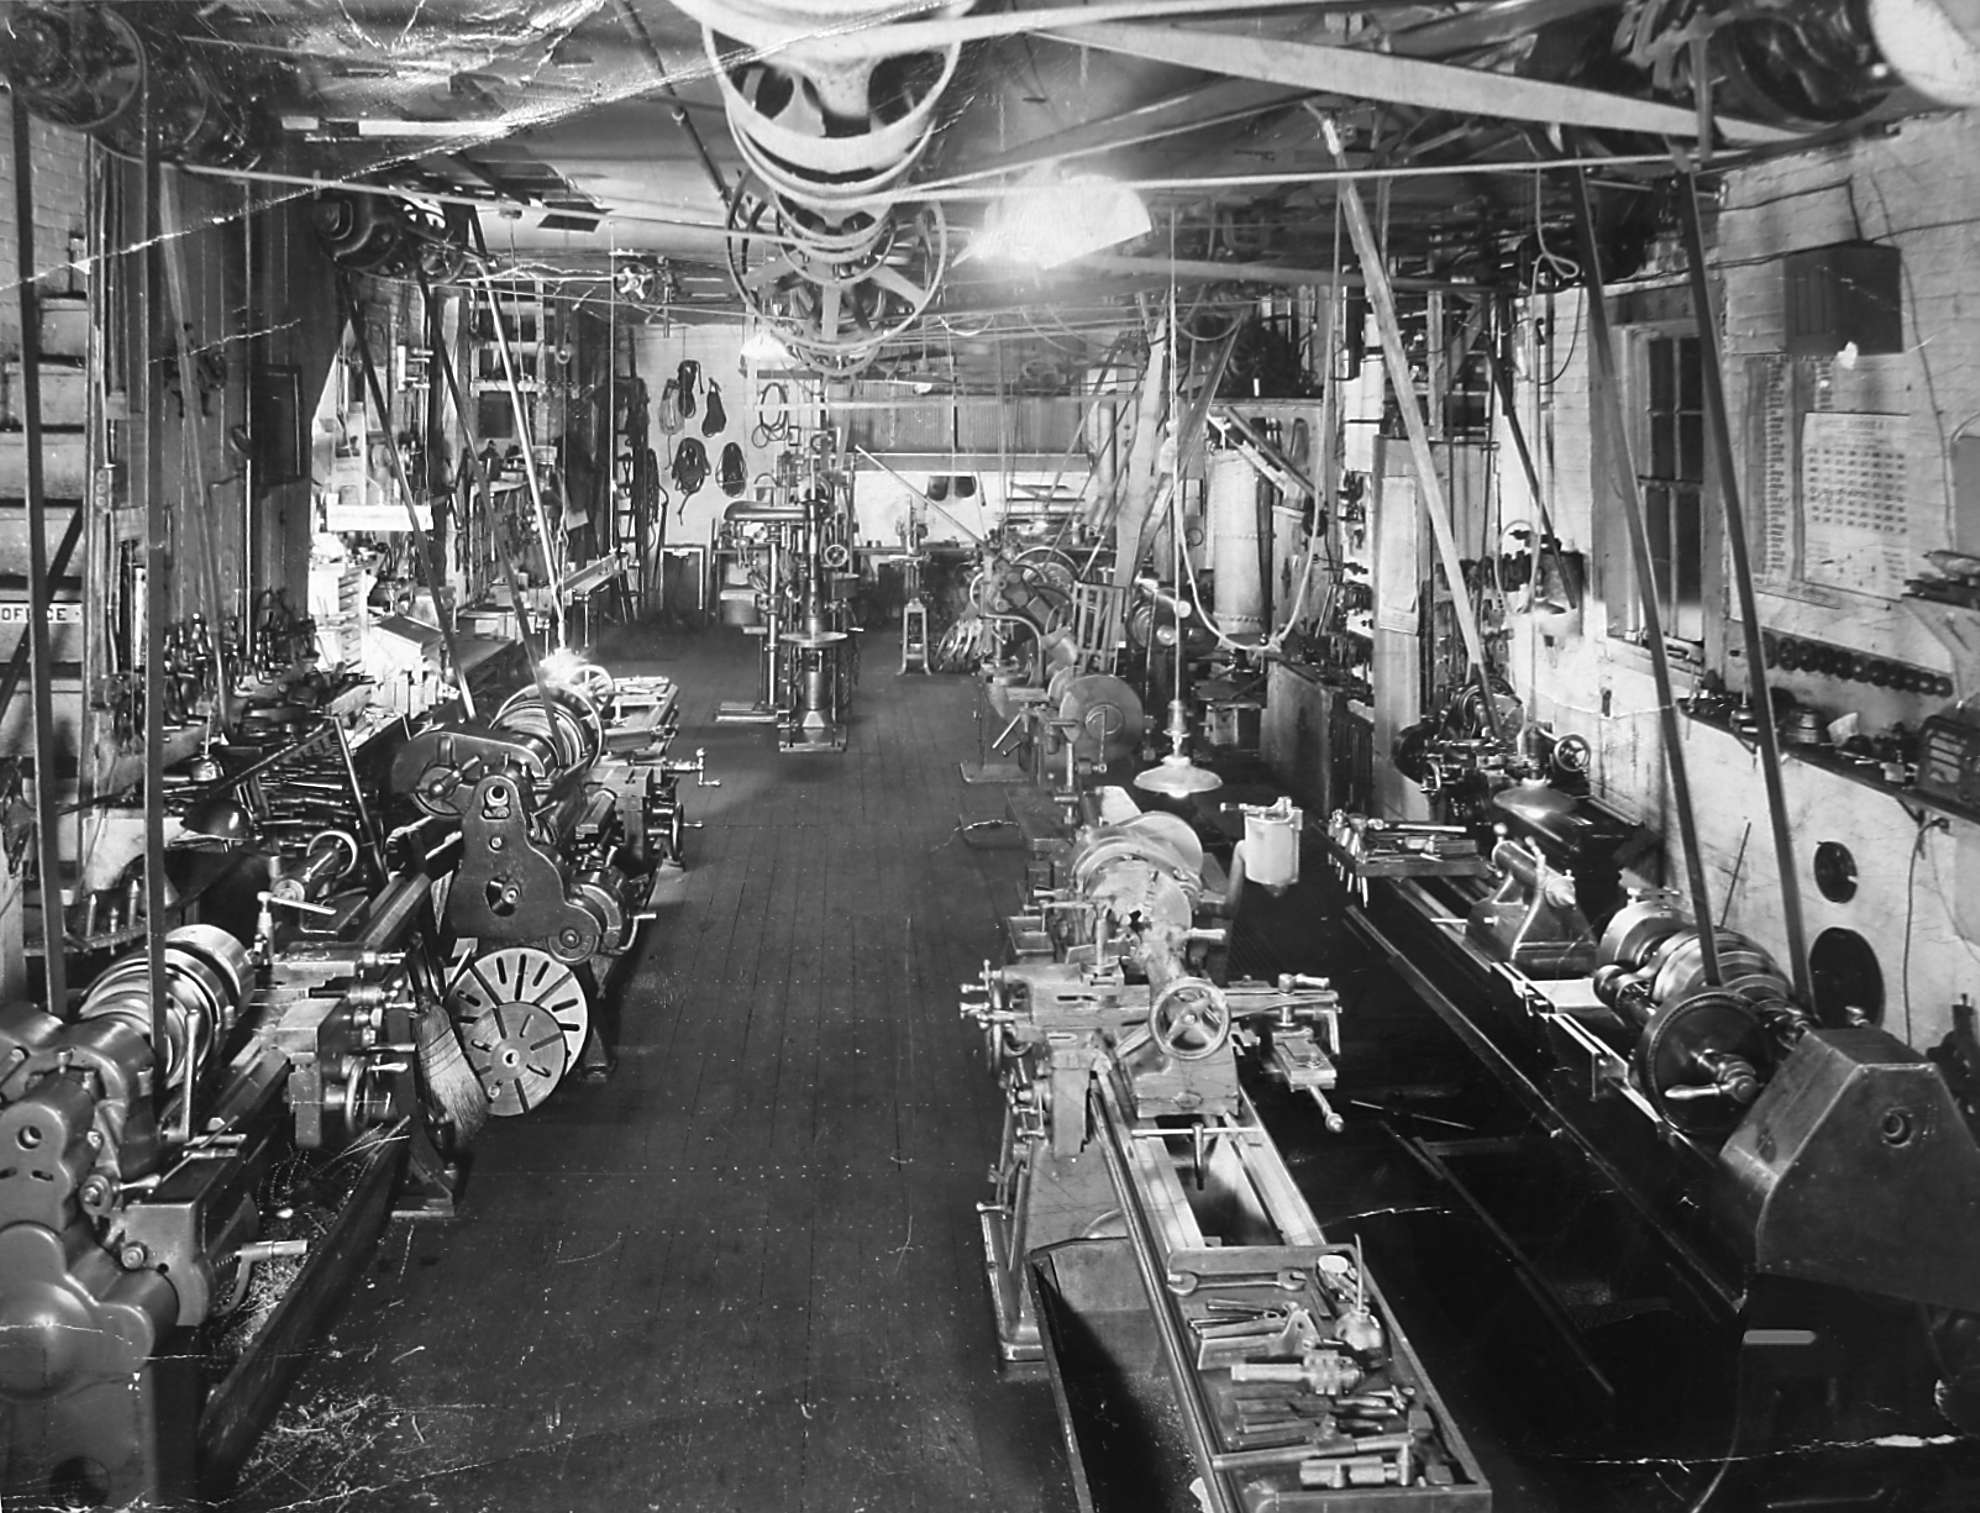 BOLD MACHINE WORKS - SHOP IN 1948